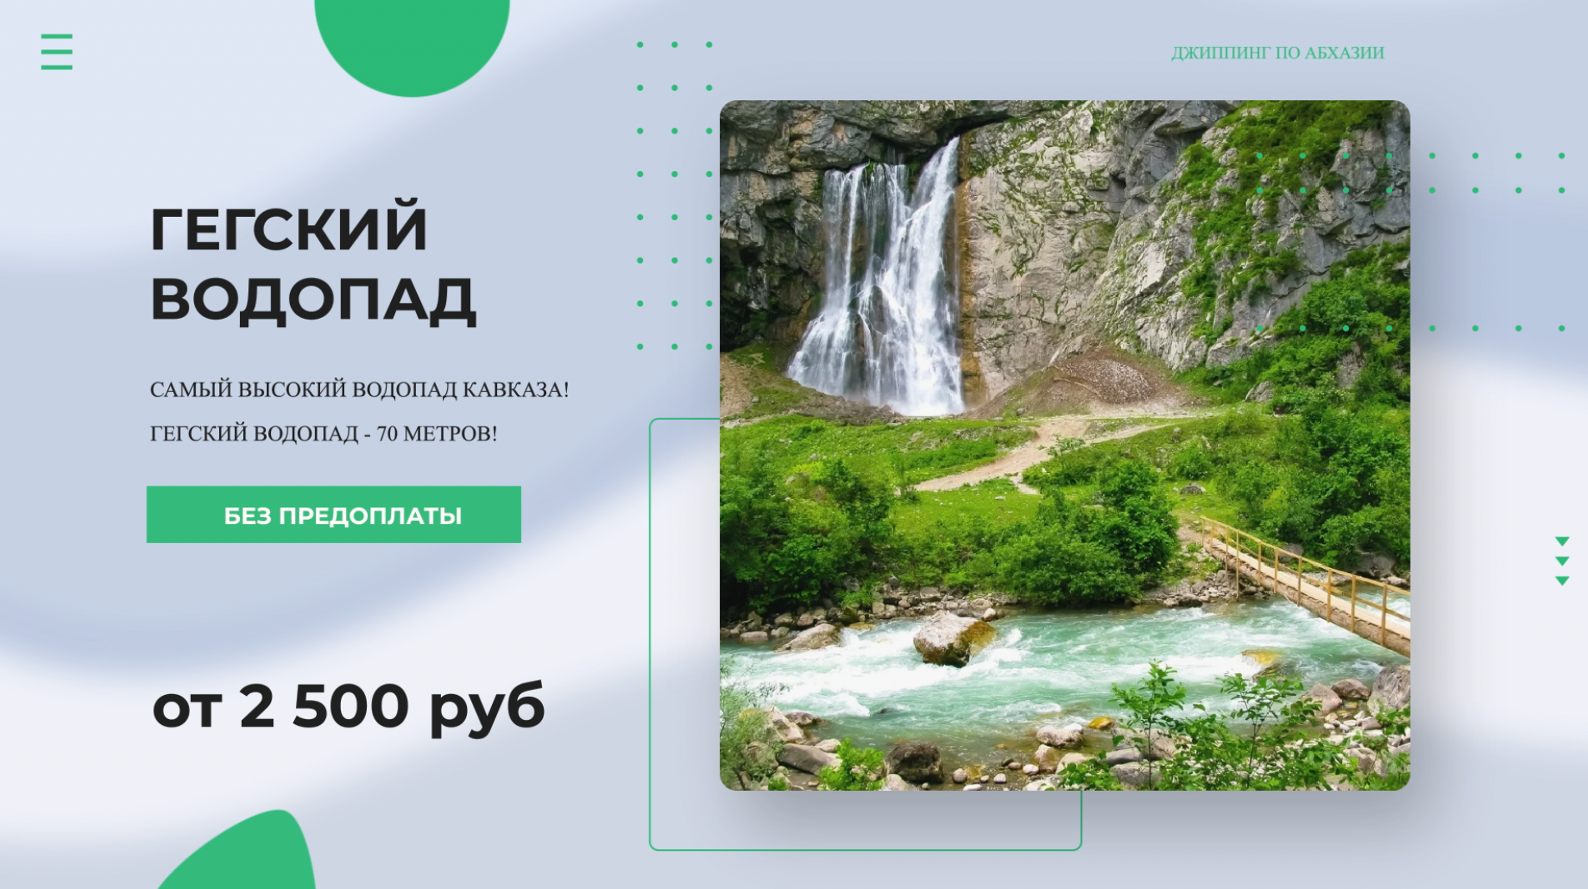 Гегский водопад Абхазия джиппинг тур 💥 Экскурсия и джип тур на Гегский водопад из Гагры